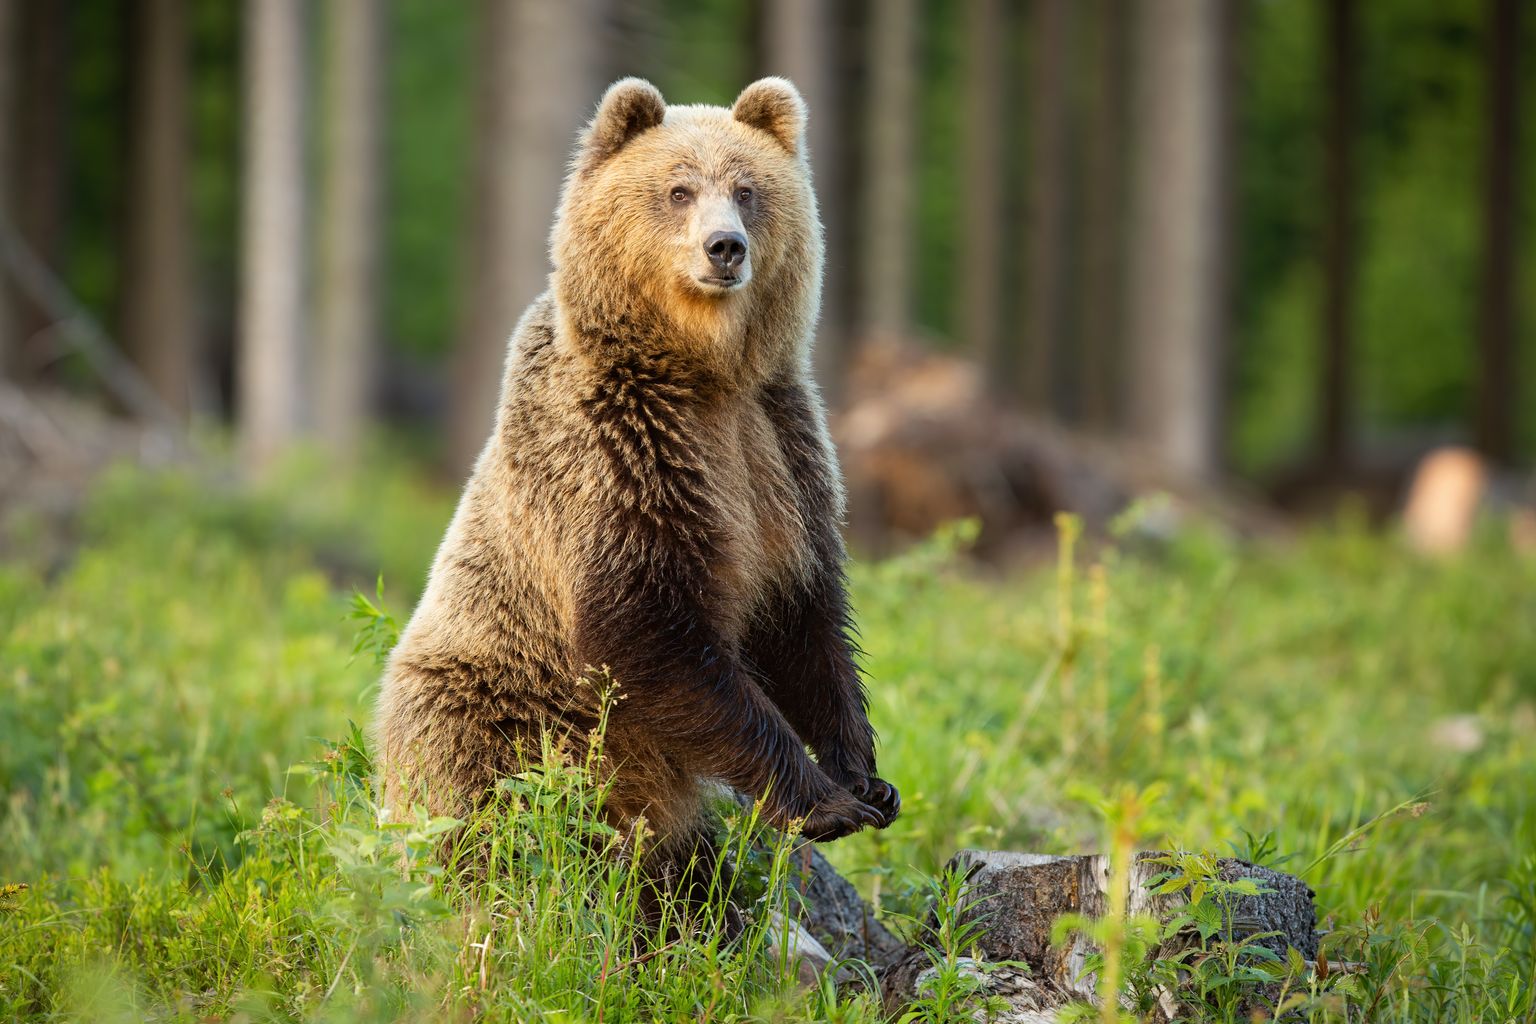 Karu tõuseb tagajalgadele selleks, et saada paremat ülevaadet ümbrusest ja see poos ei ole agressiivsusega seotud - kui karu tahab rünnata, siis teeb ta seda neljal jalal.